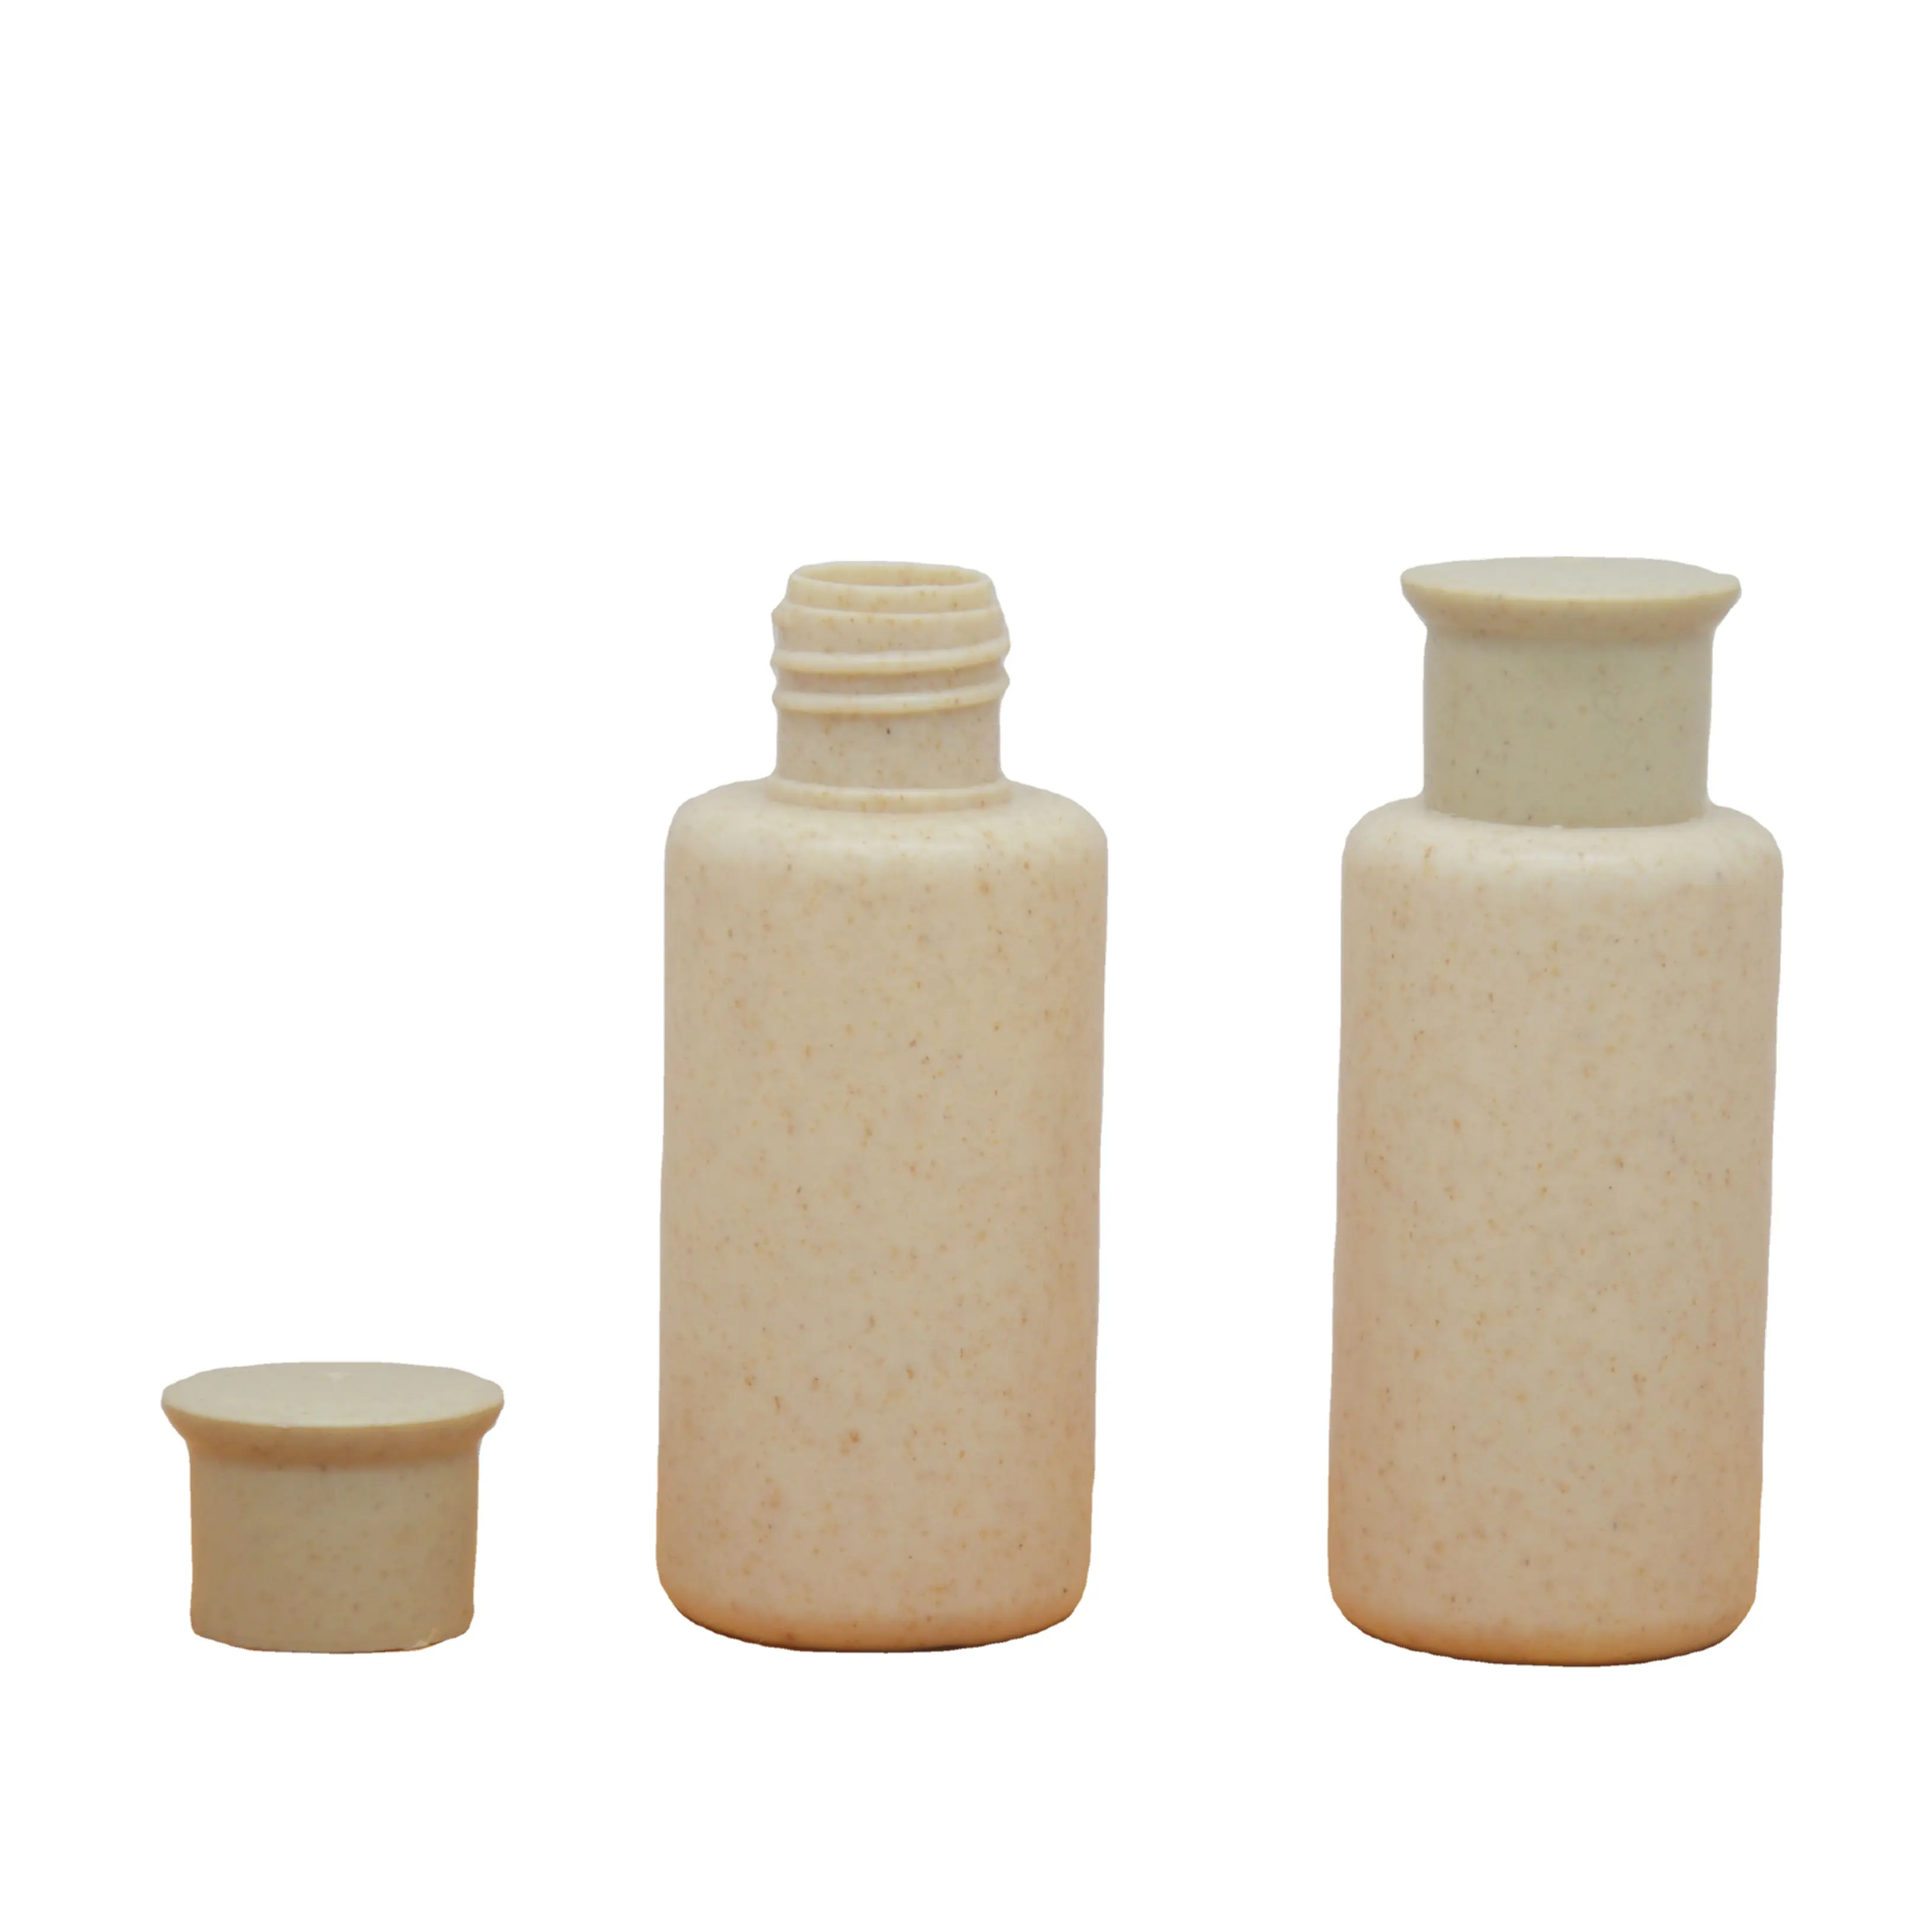 Botella Biodegradable de paja de trigo para cosméticos, envase de embalaje de viaje exclusivo suministrado por el hotel, venta al por mayor